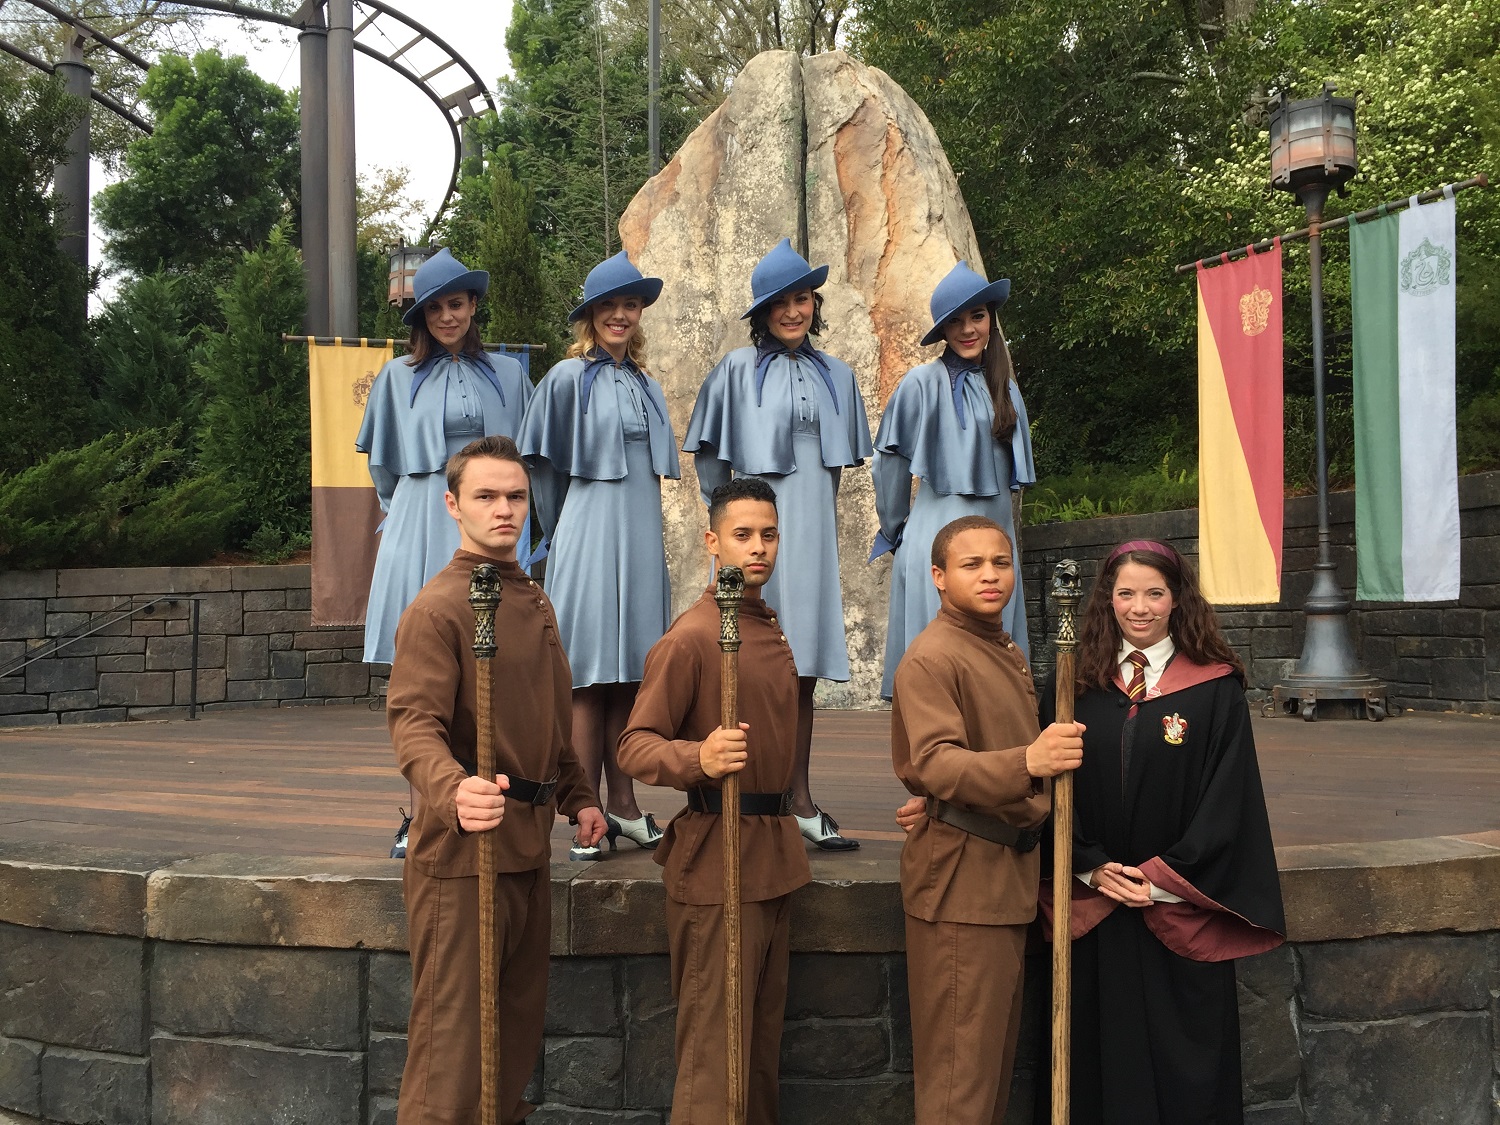 Triwizard Spirit Rally Performers - Harry Potter auf den Inseln des Abenteuers